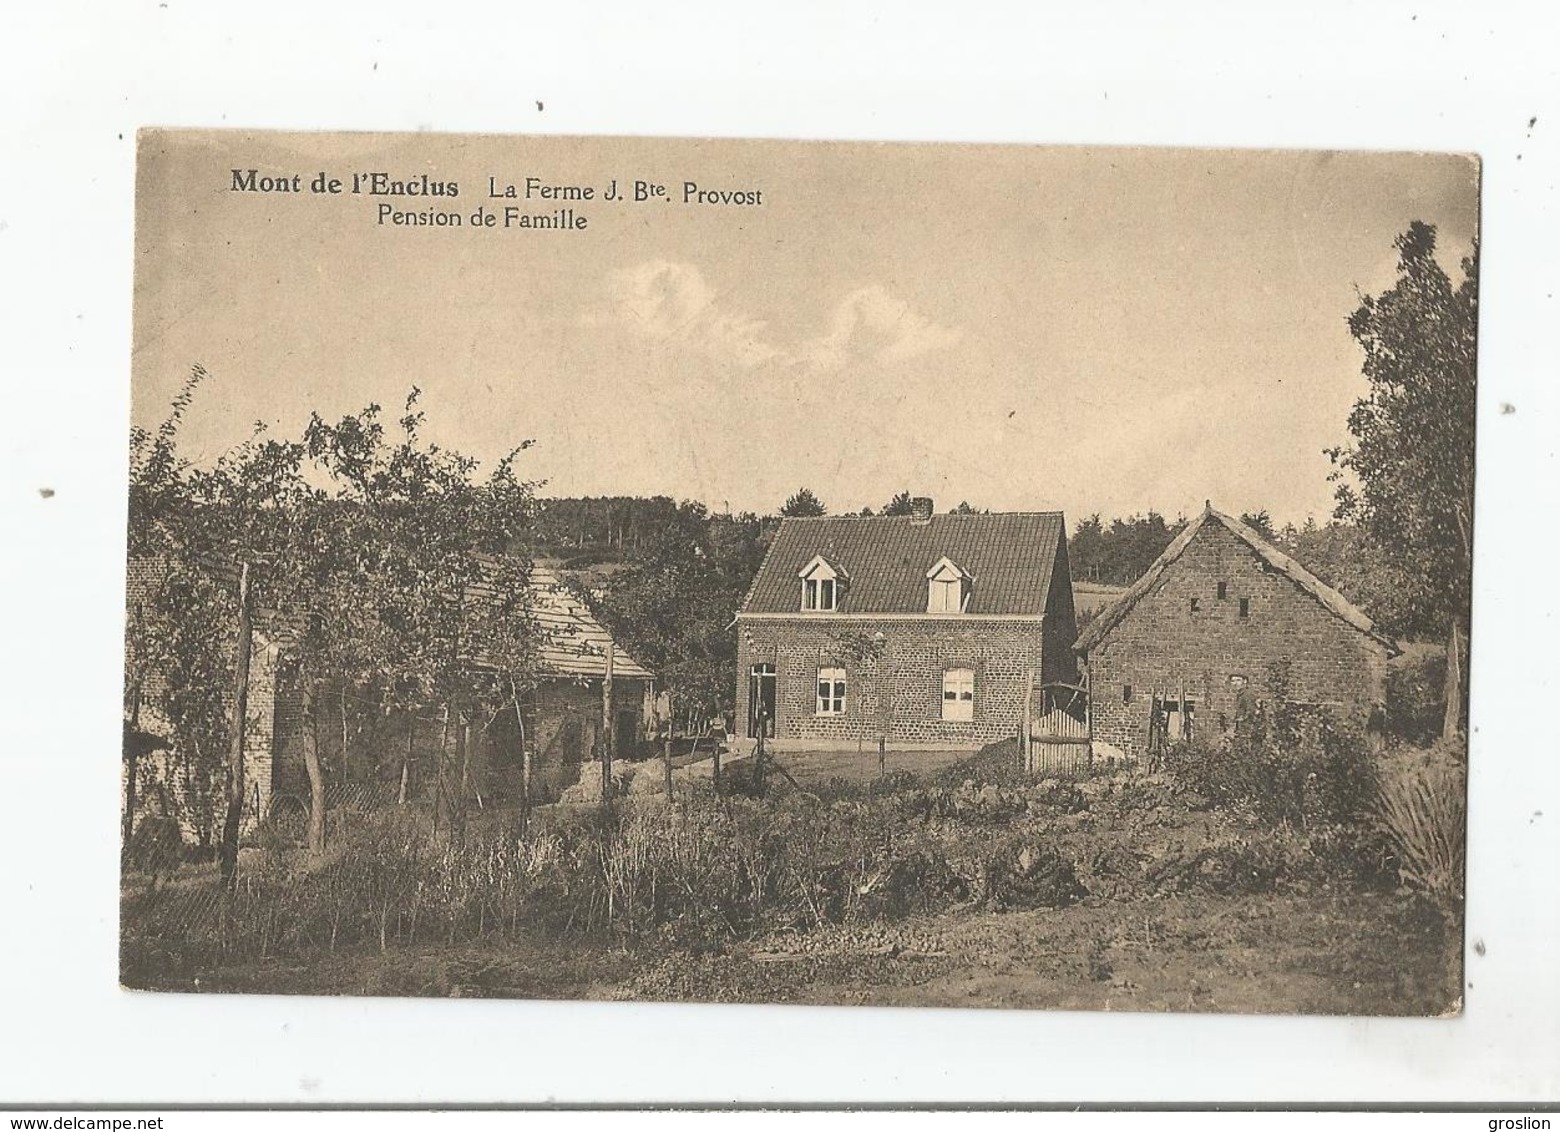 MONT DE L'ENCLUS LA FERME JEAN BAPTISTE  PROVOST PENSION DE FAMILLE 1932 - Mont-de-l'Enclus